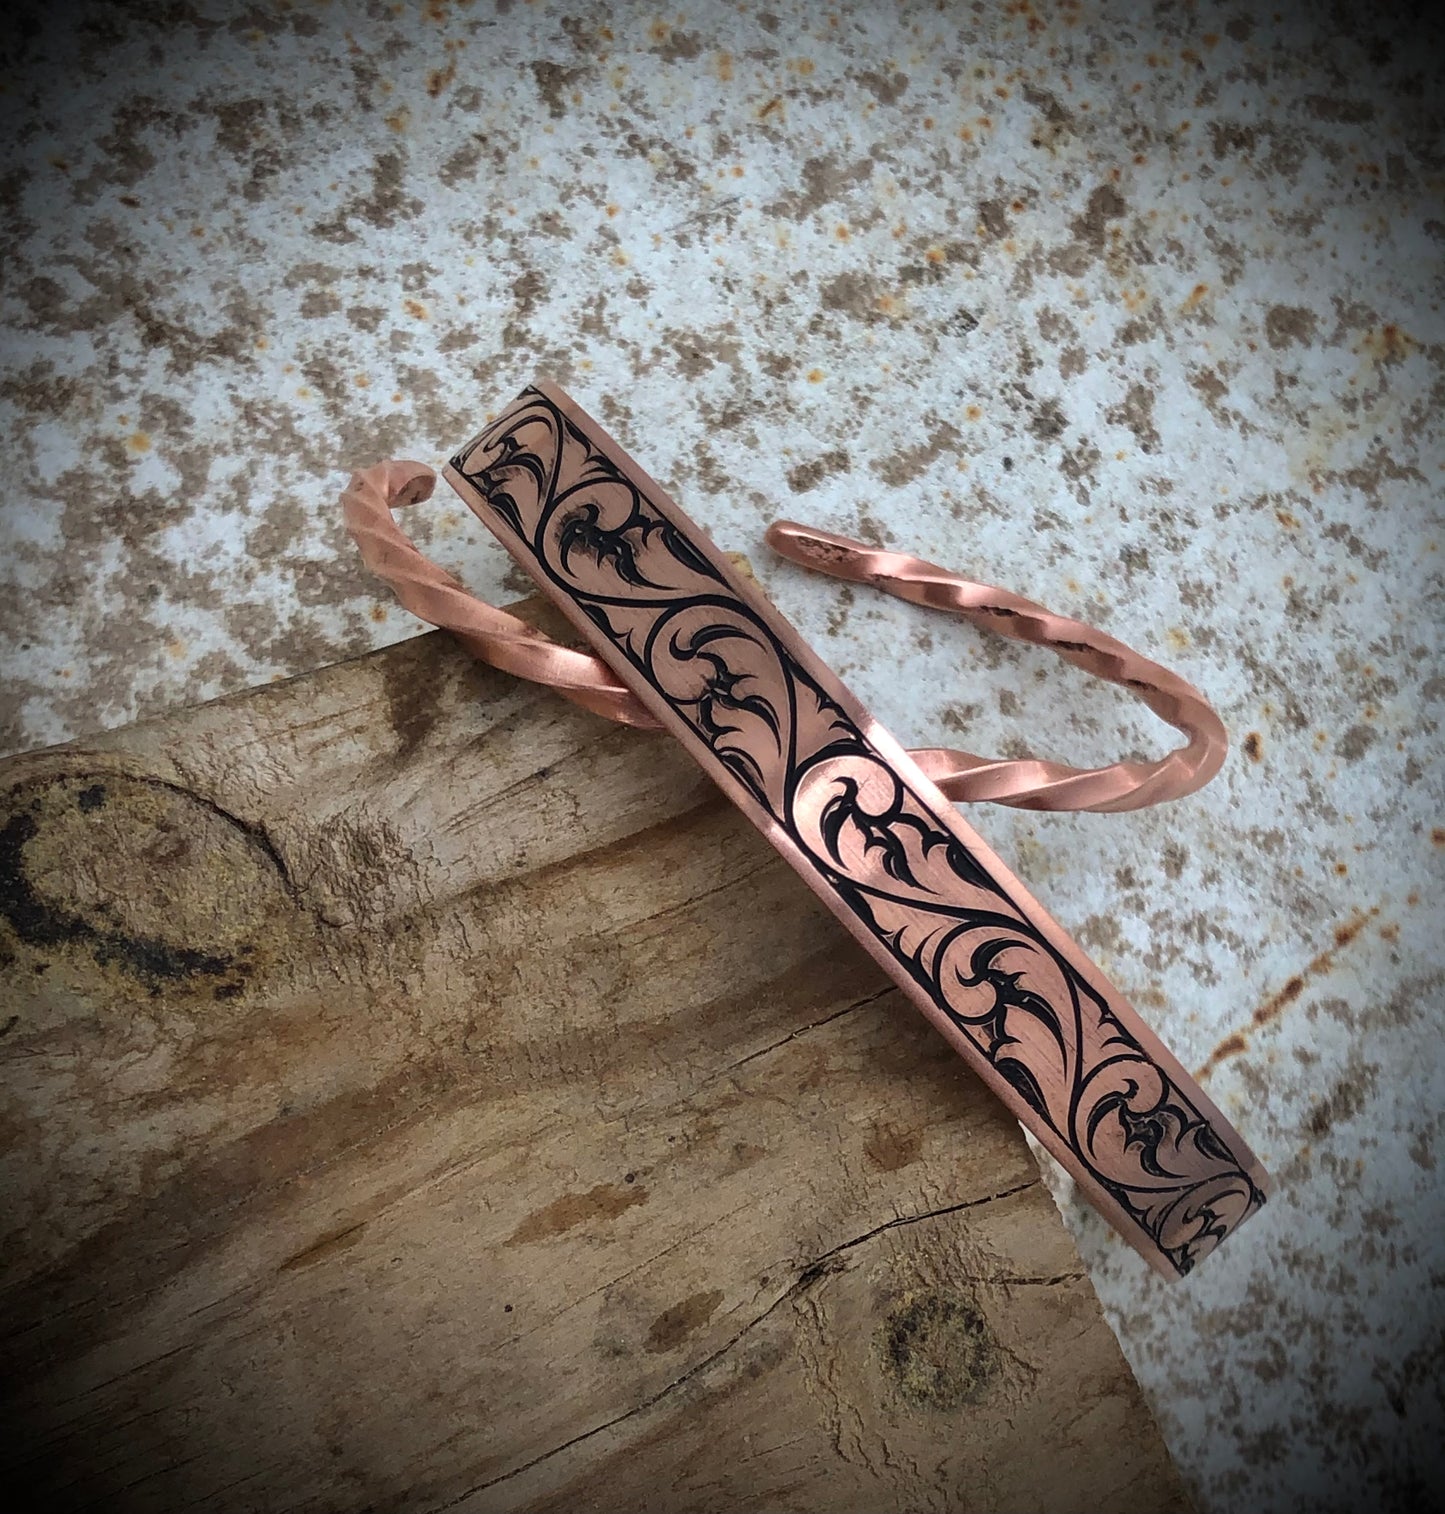 Made to order engraved copper bracelet